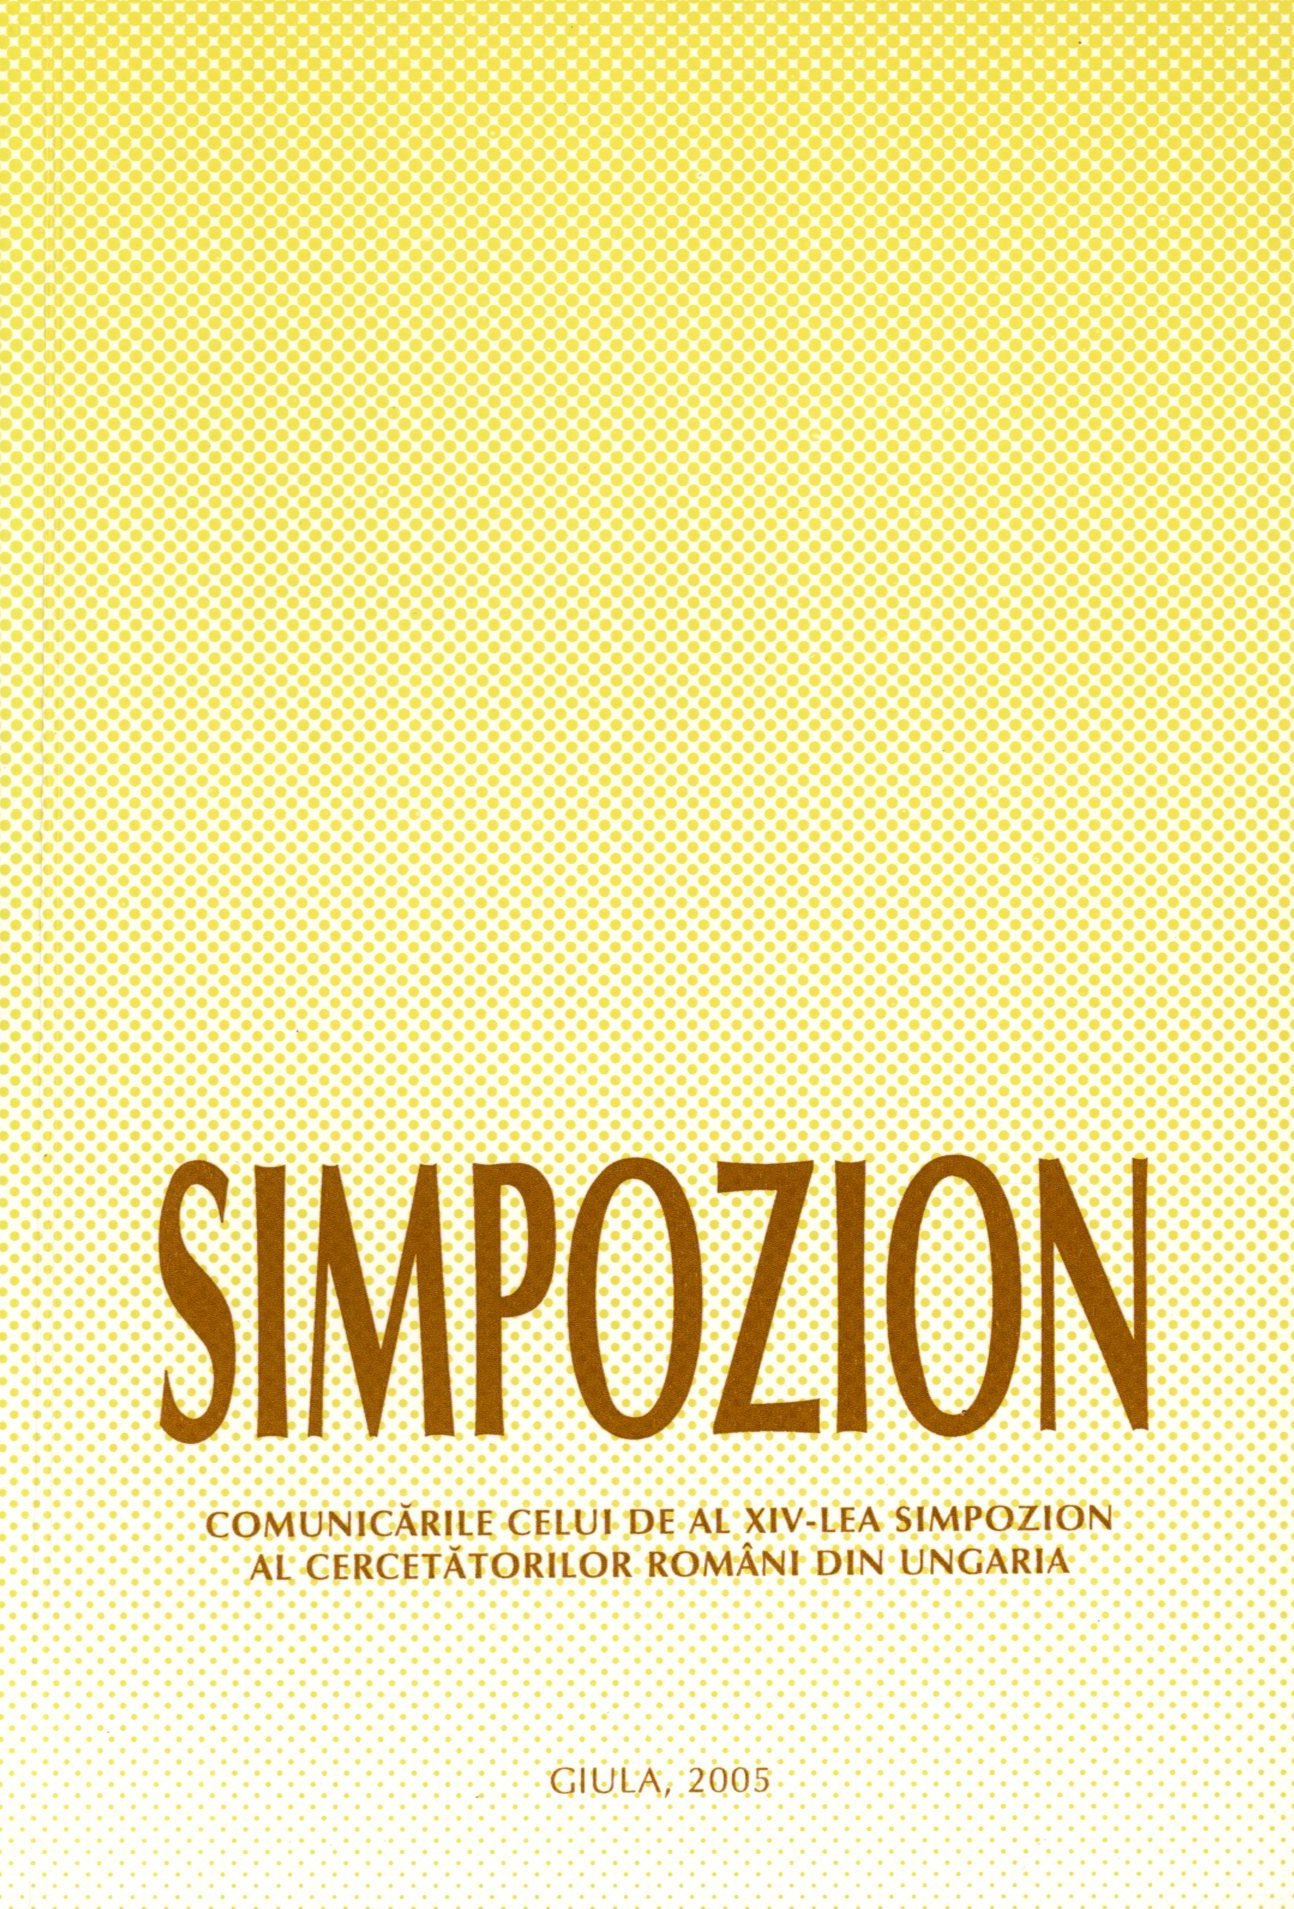 SYMPOZION 2005 (Erkel Ferenc Múzeum és Könyvtár, Gyula CC BY-NC-SA)